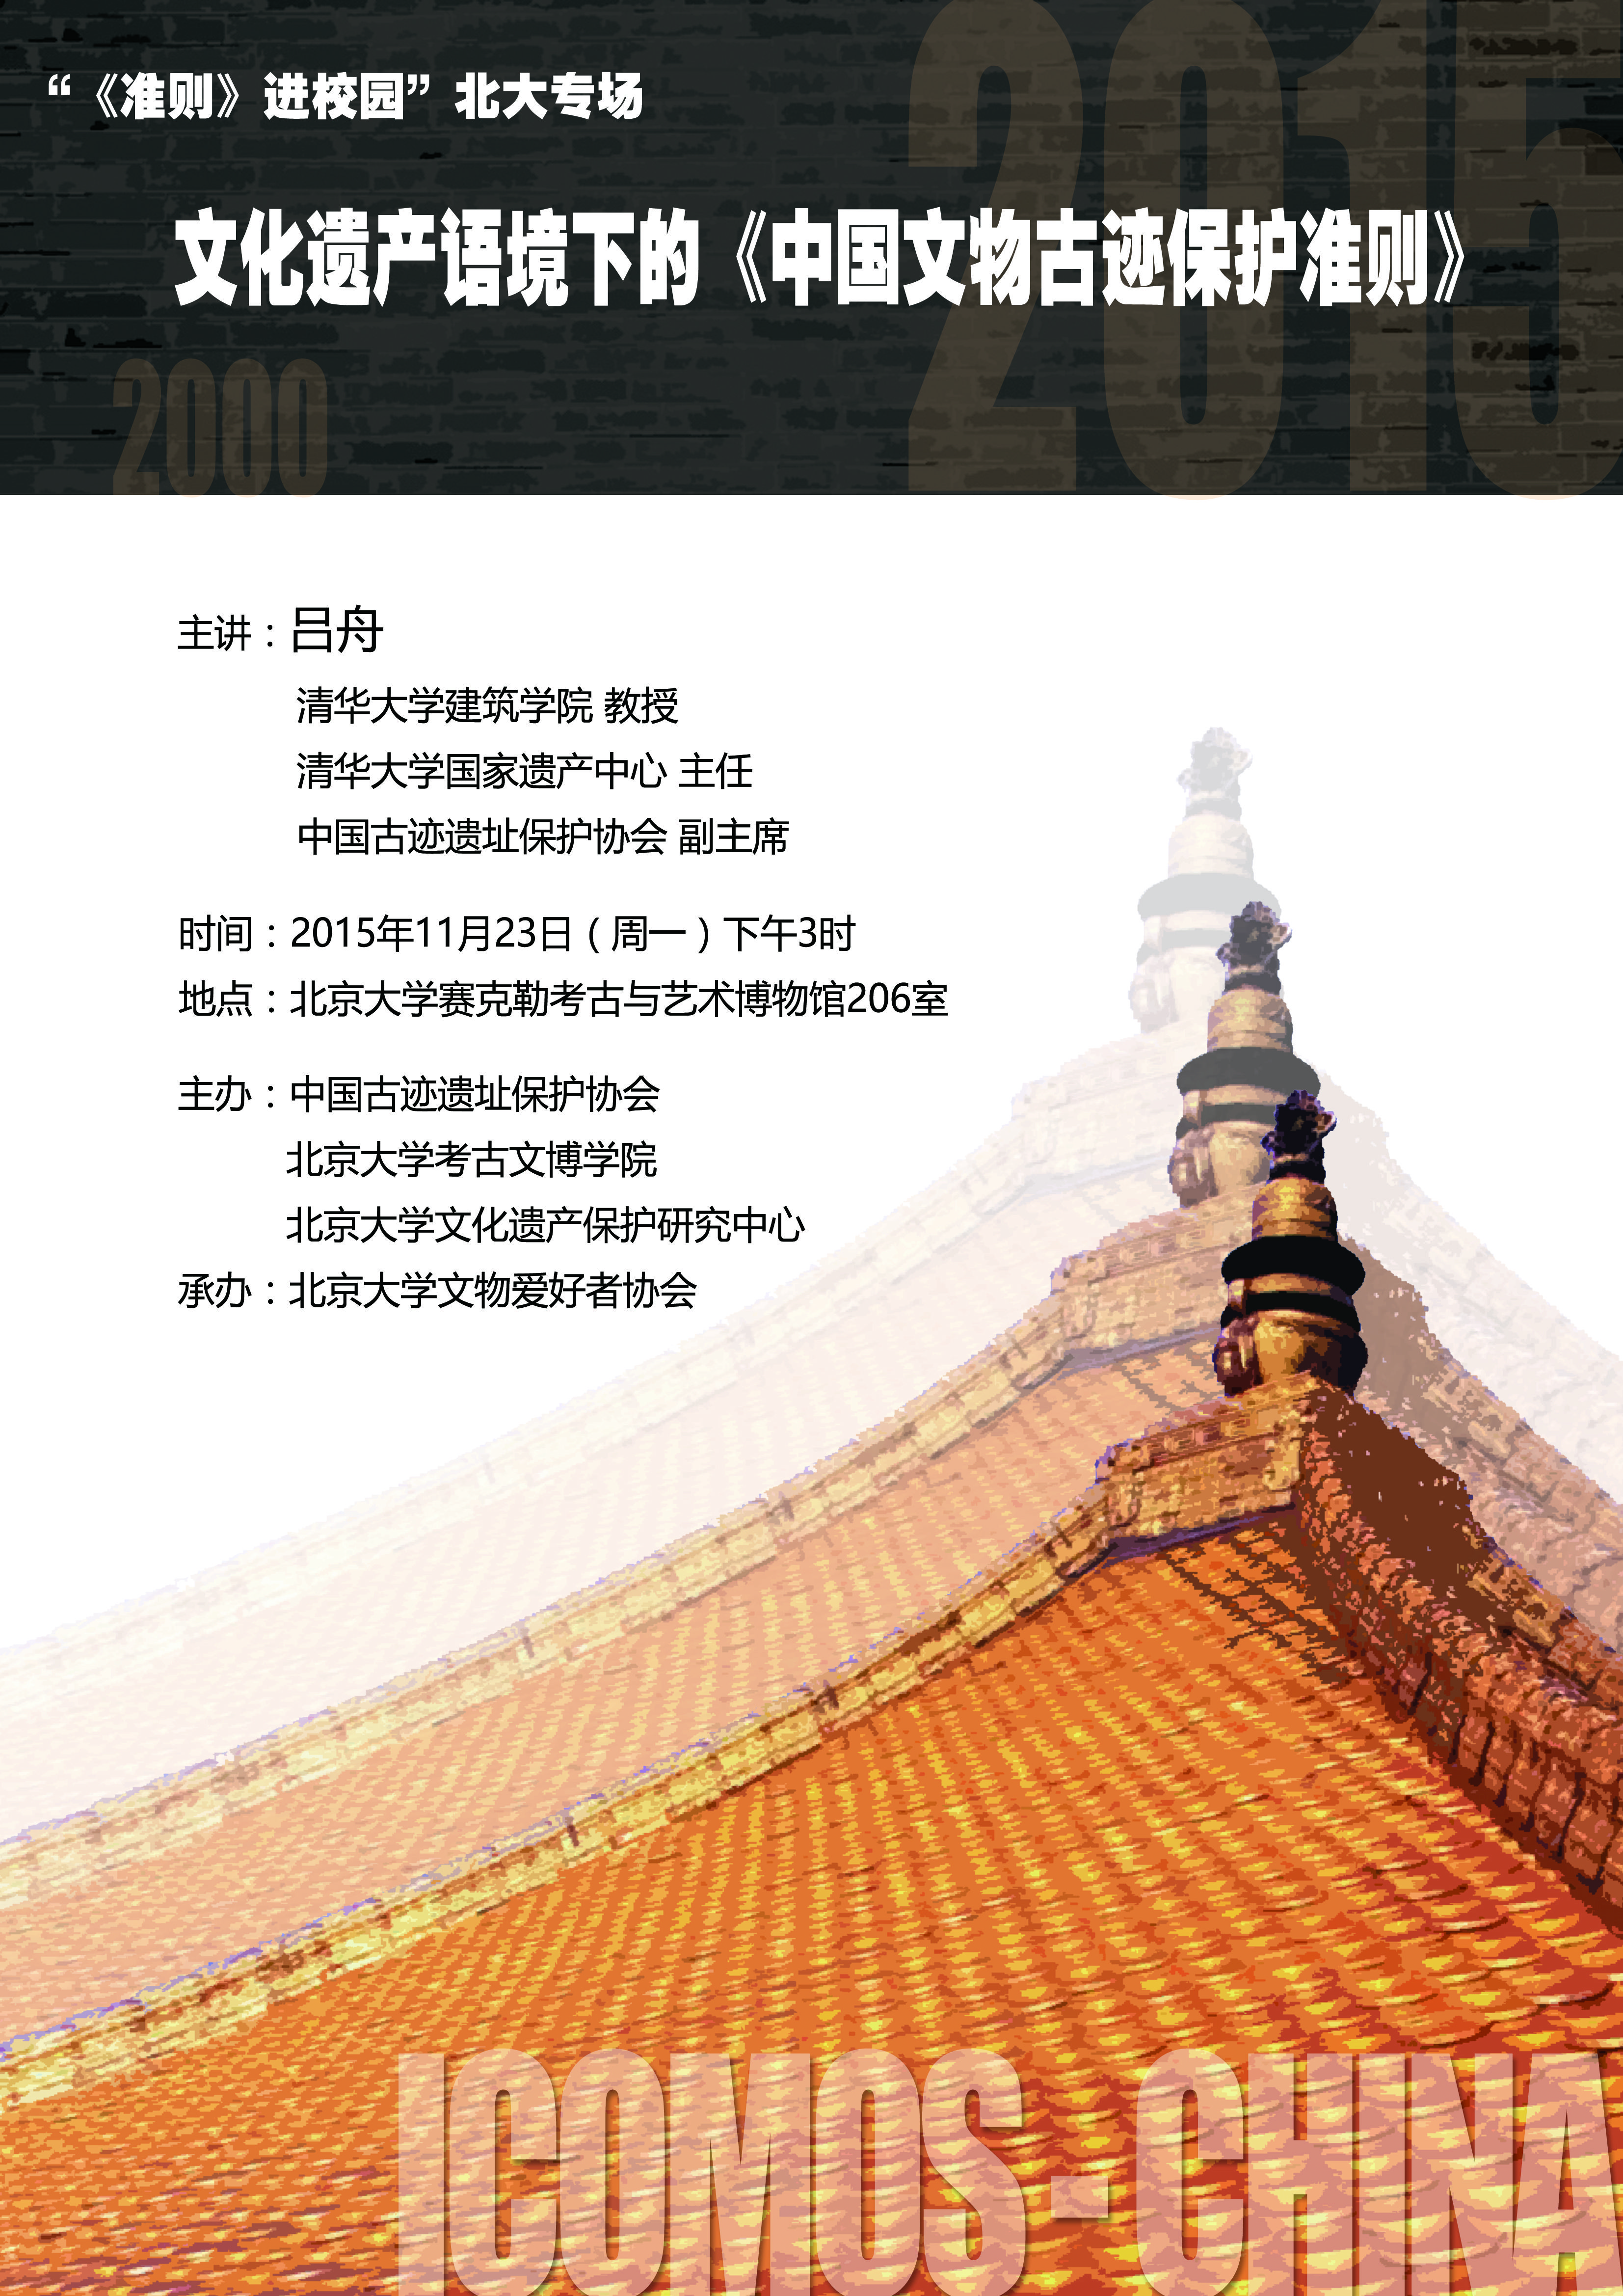 龙门石窟 - 国家艺术基金资助项目-丝绸之路中国段世界文化遗产数字展示与交流平台